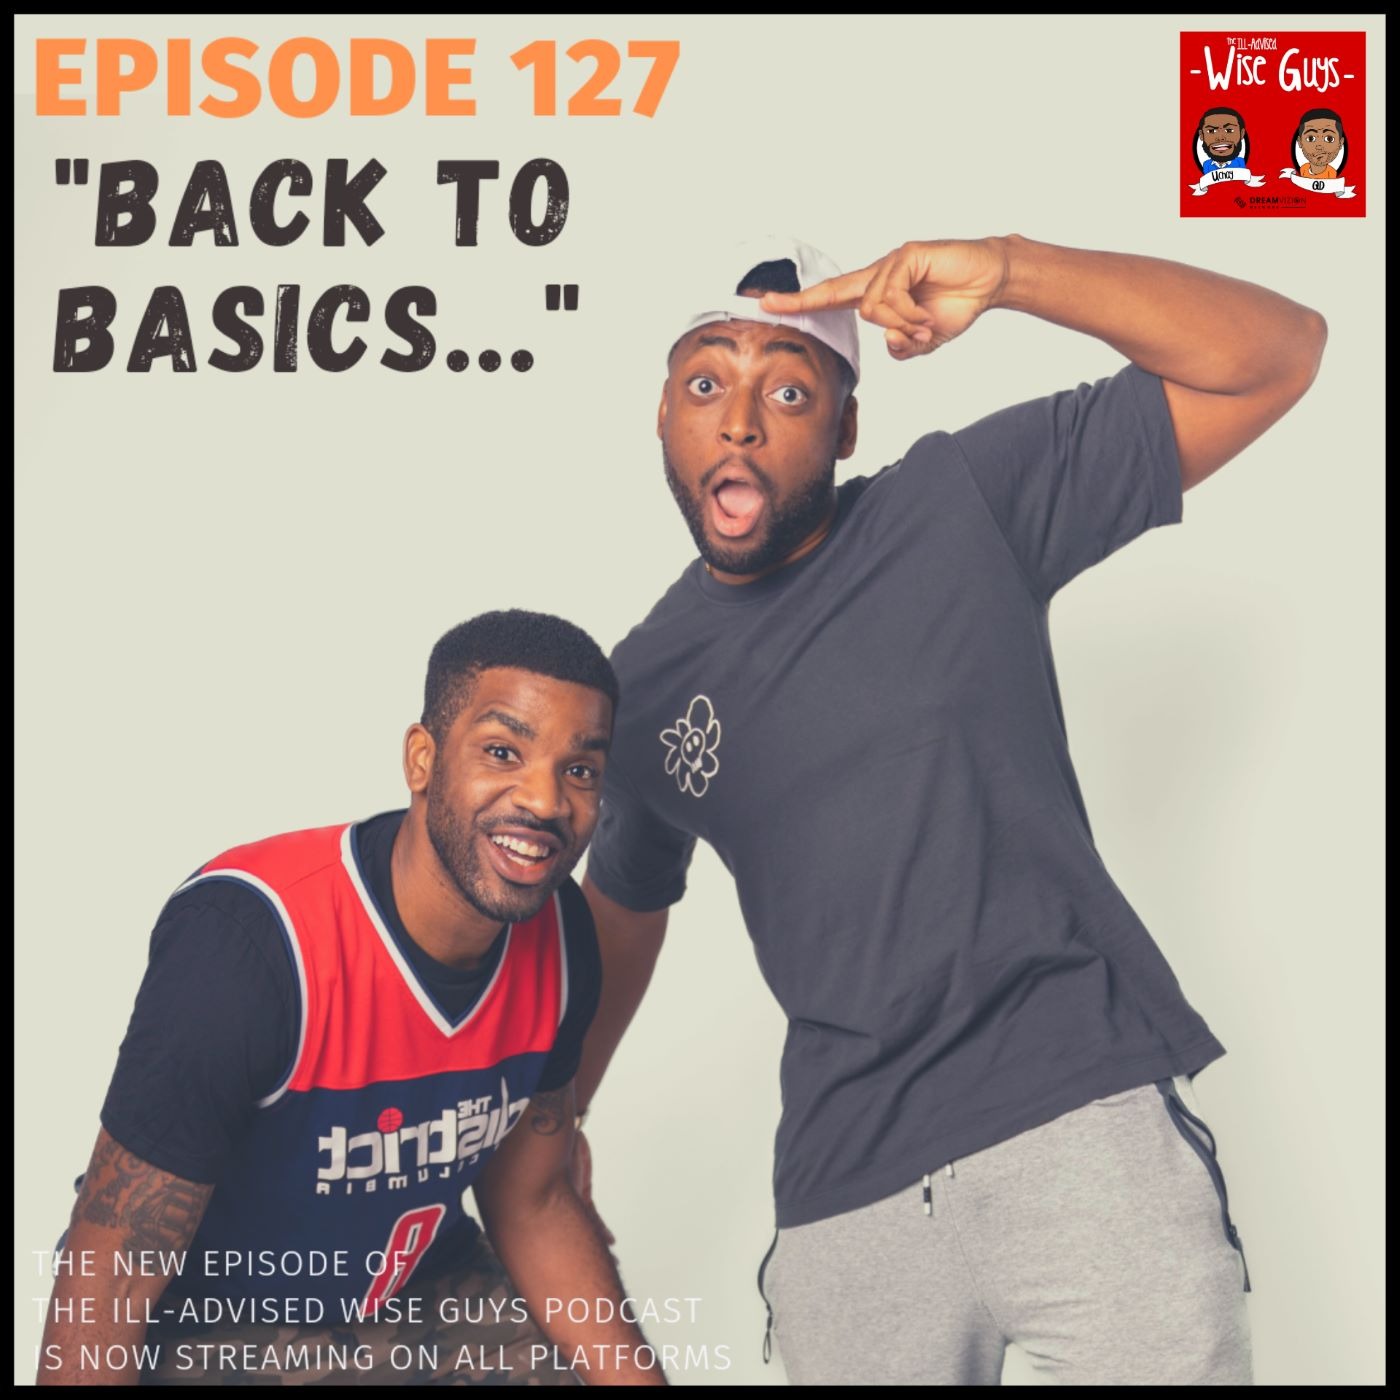 Episode 127 - "Back To Basics..."